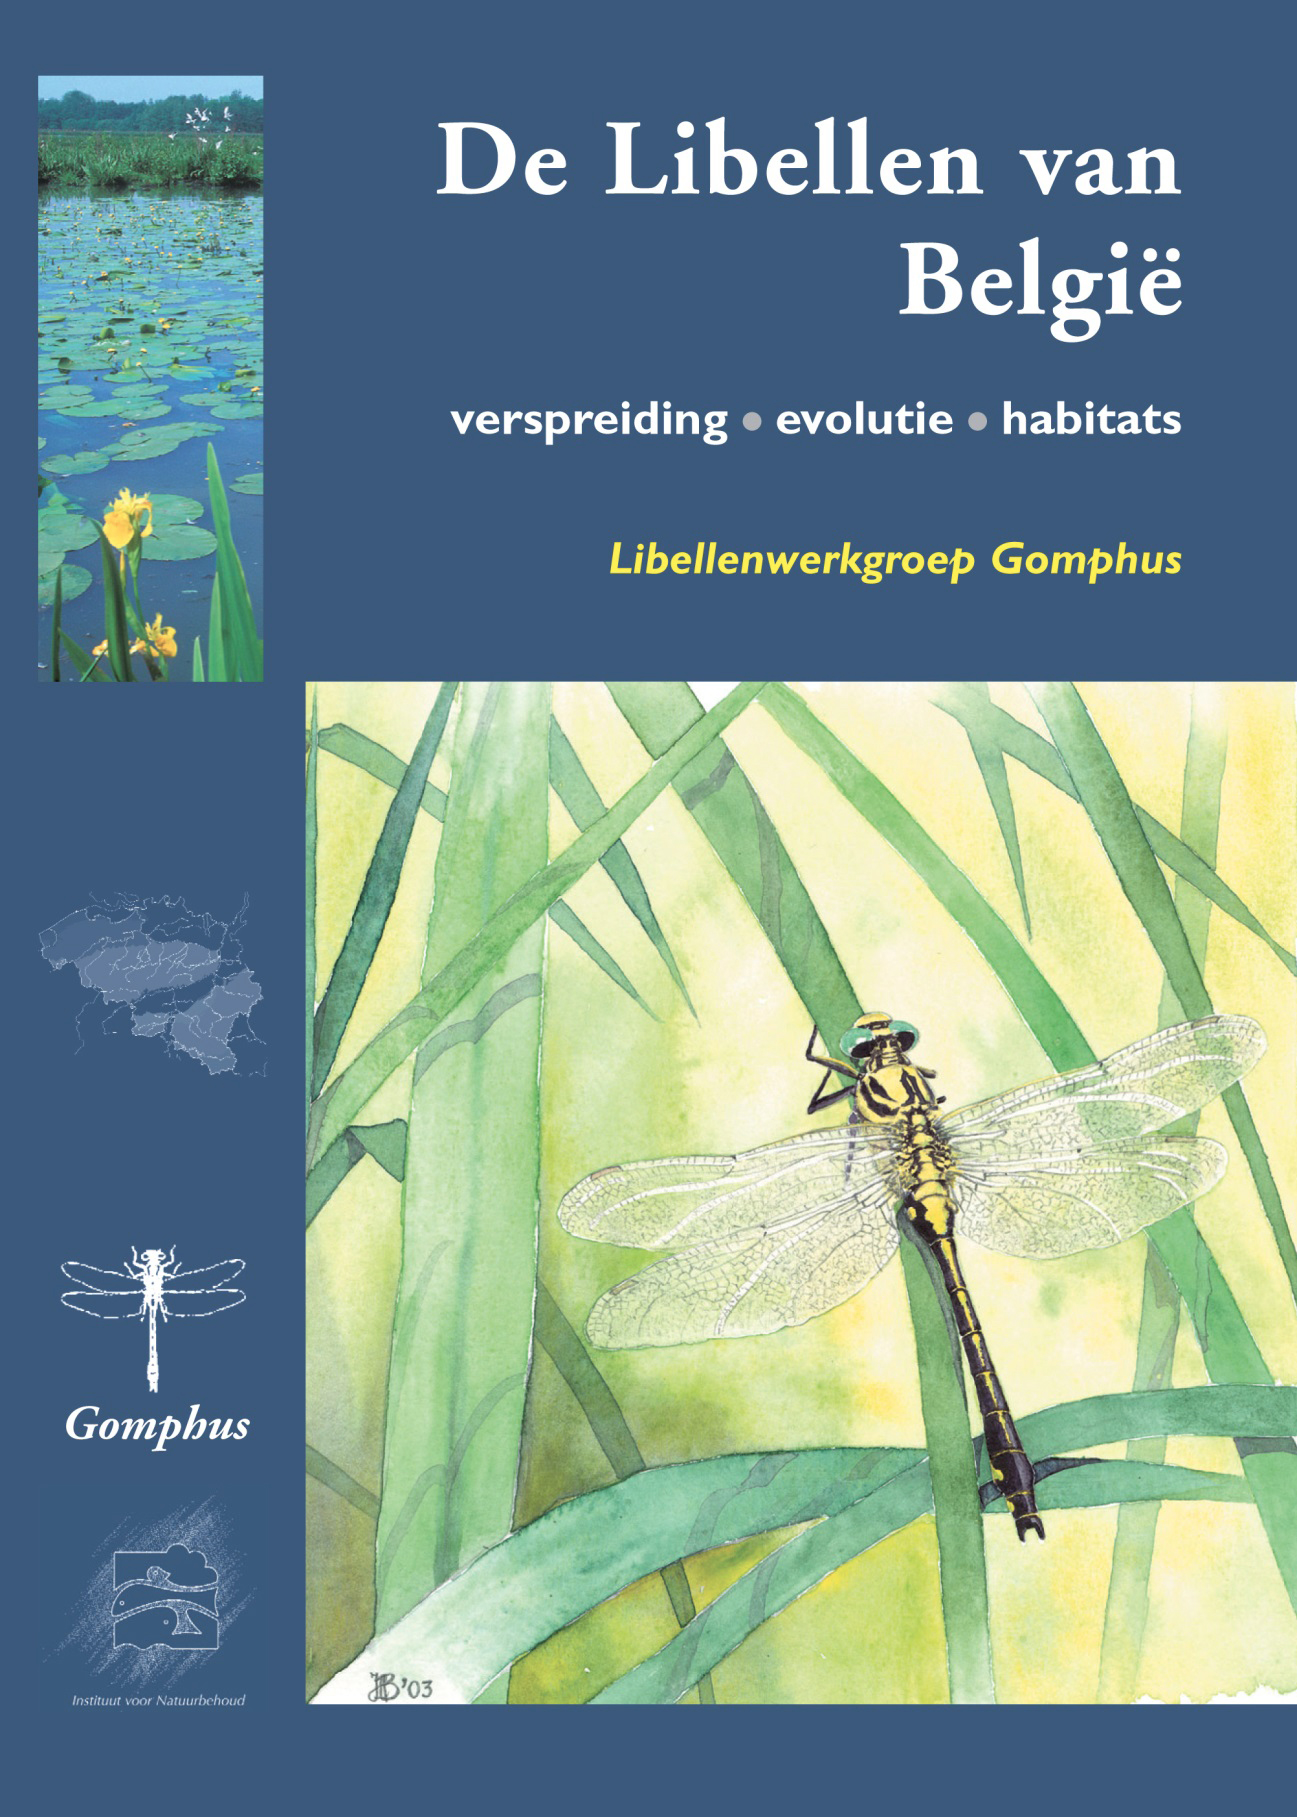 Libellenatlas Belgie